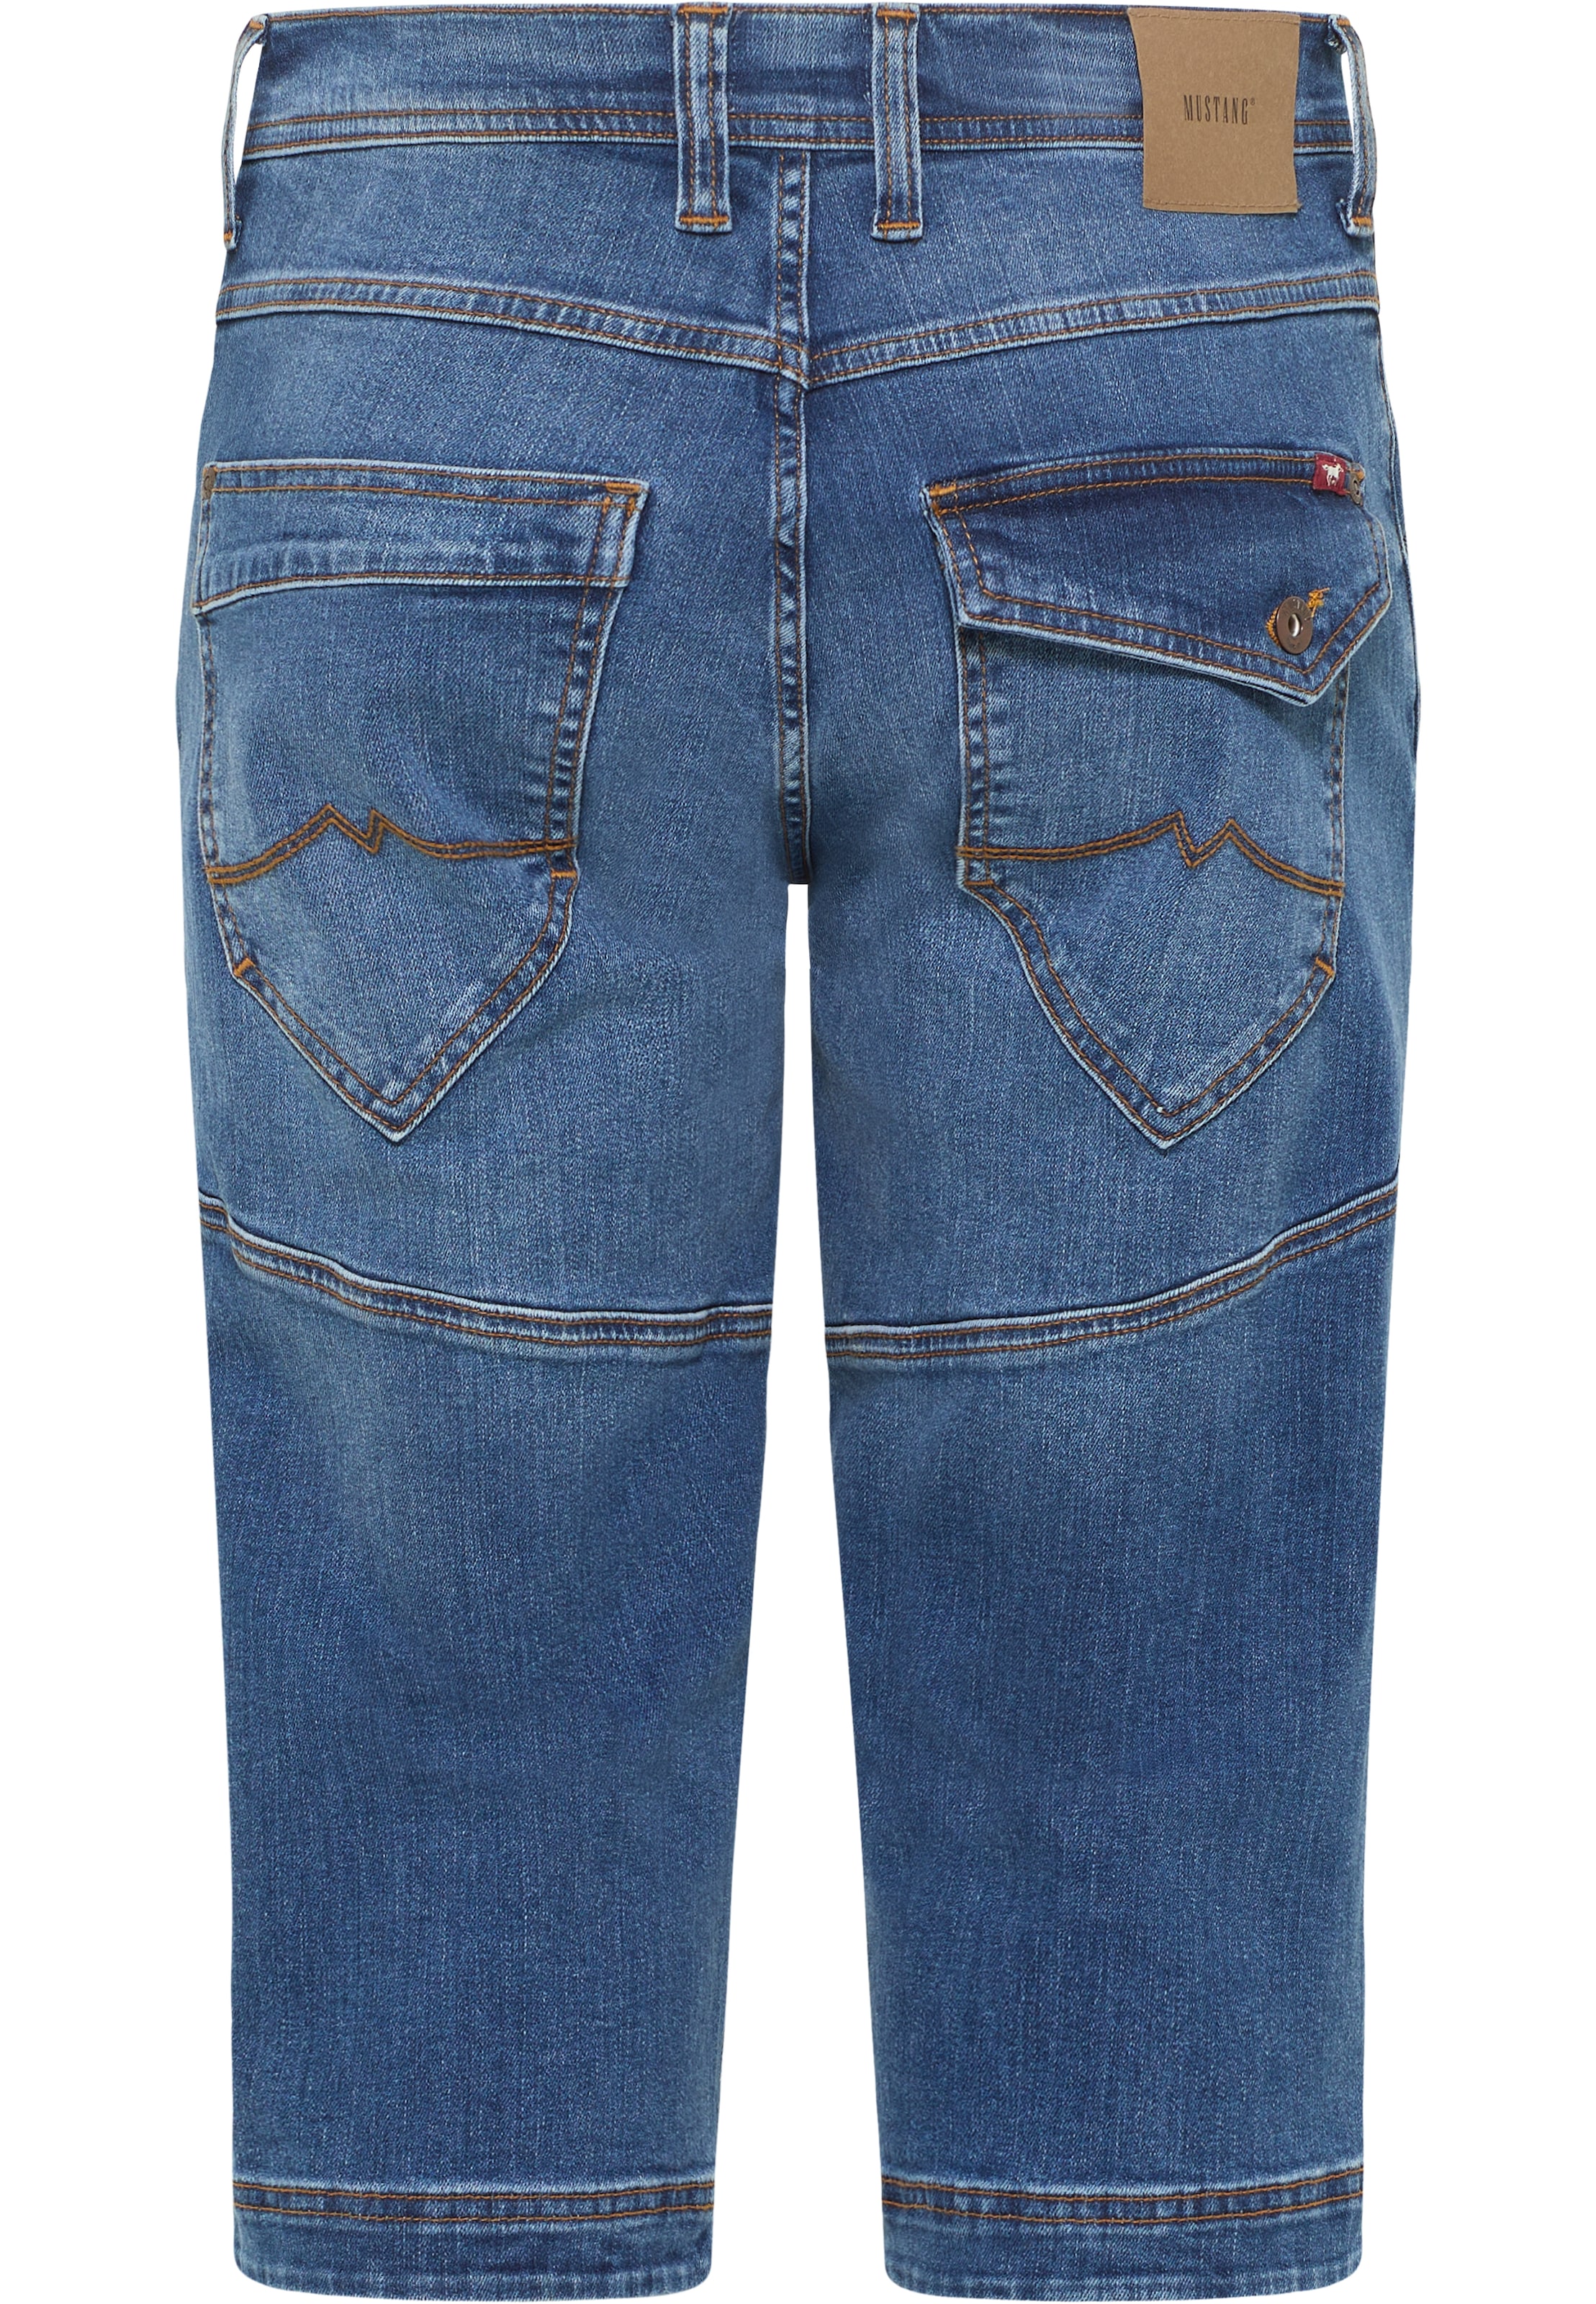 MUSTANG Jeansshorts »Style Fremont Shorts« auf versandkostenfrei